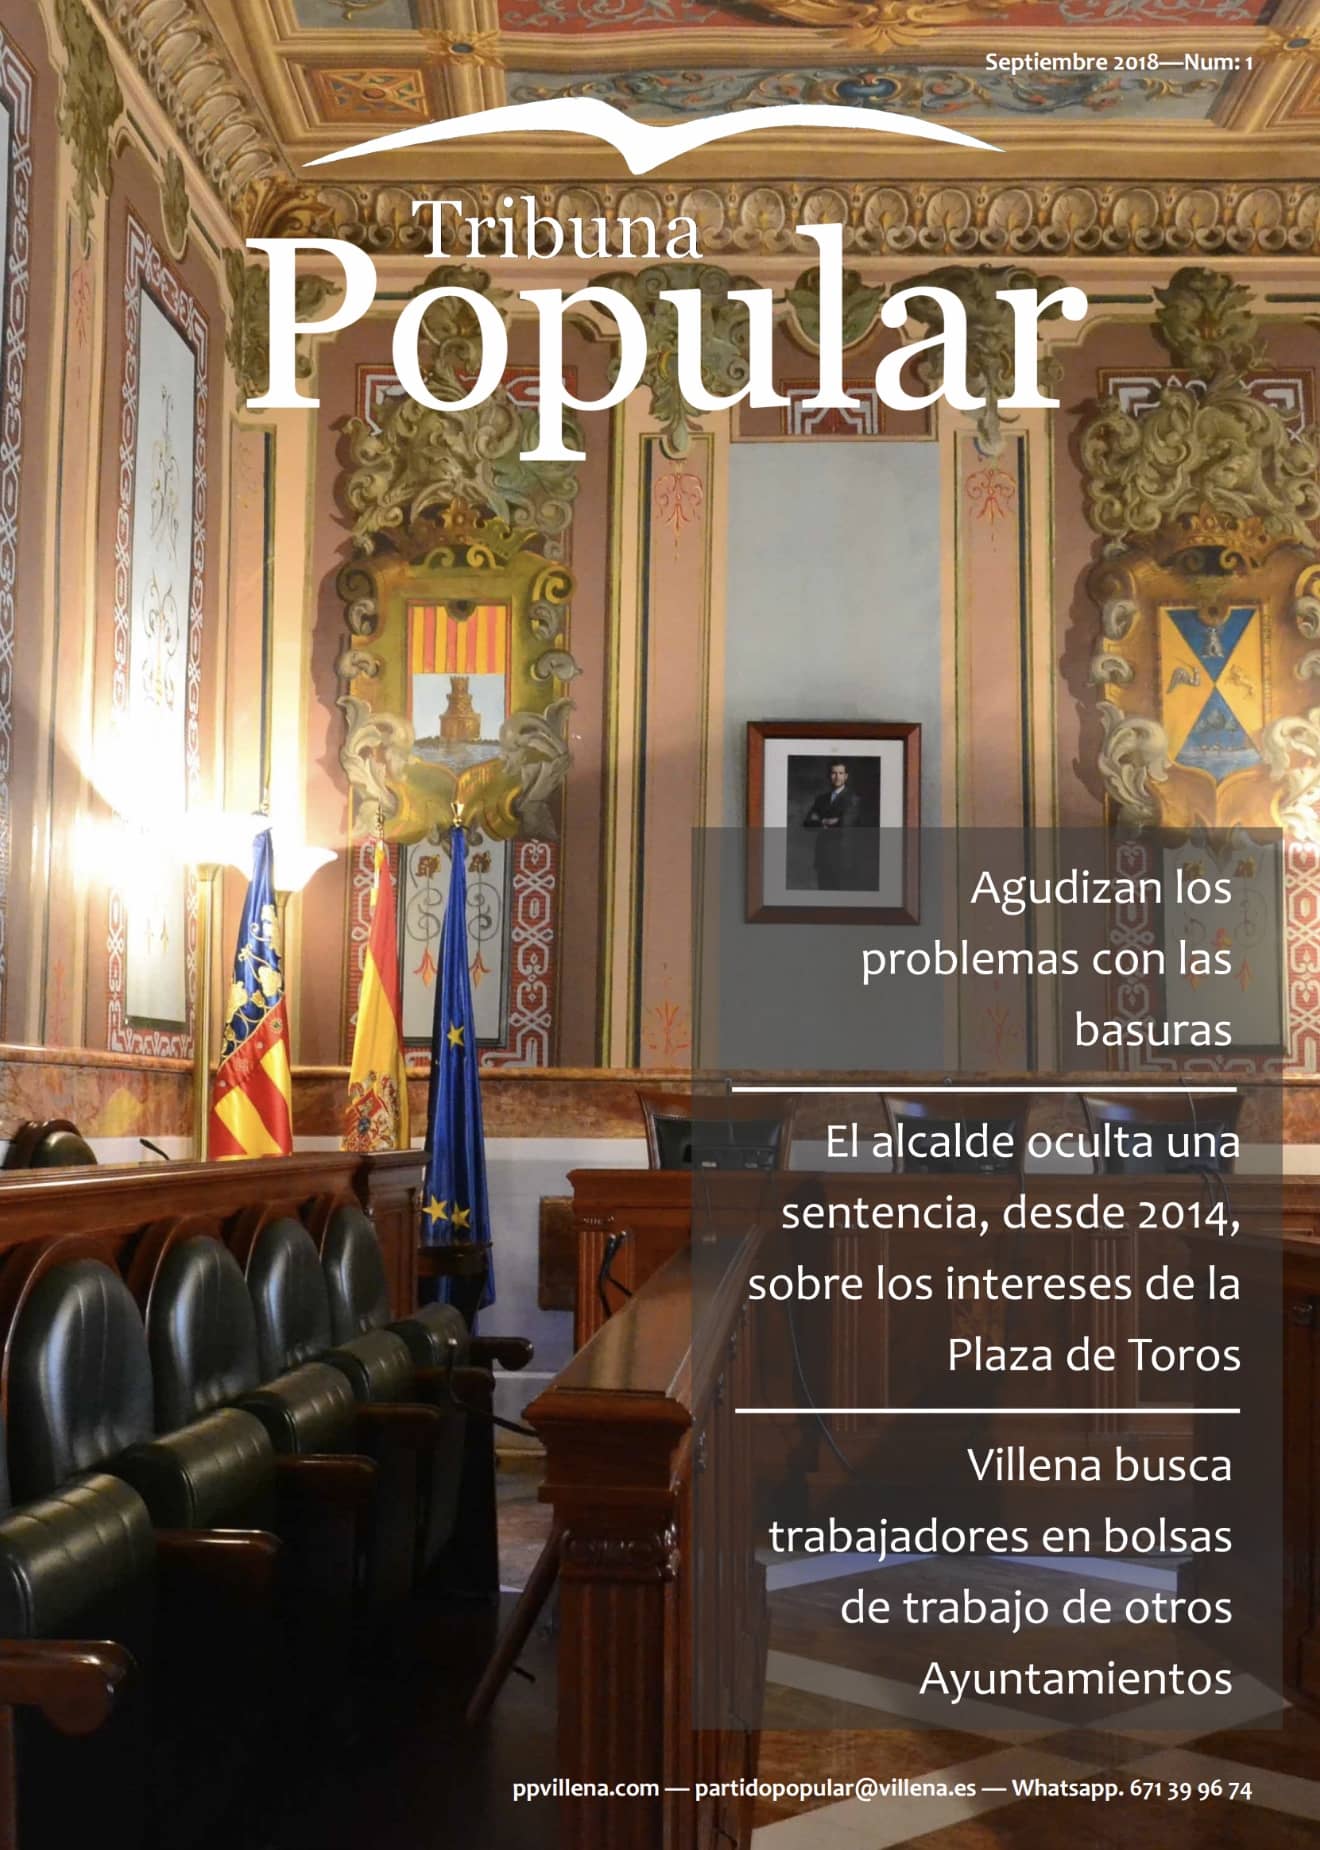 El PP lanza su nueva revista “Tribuna Popular”, que editará una vez al mes, en formato digital